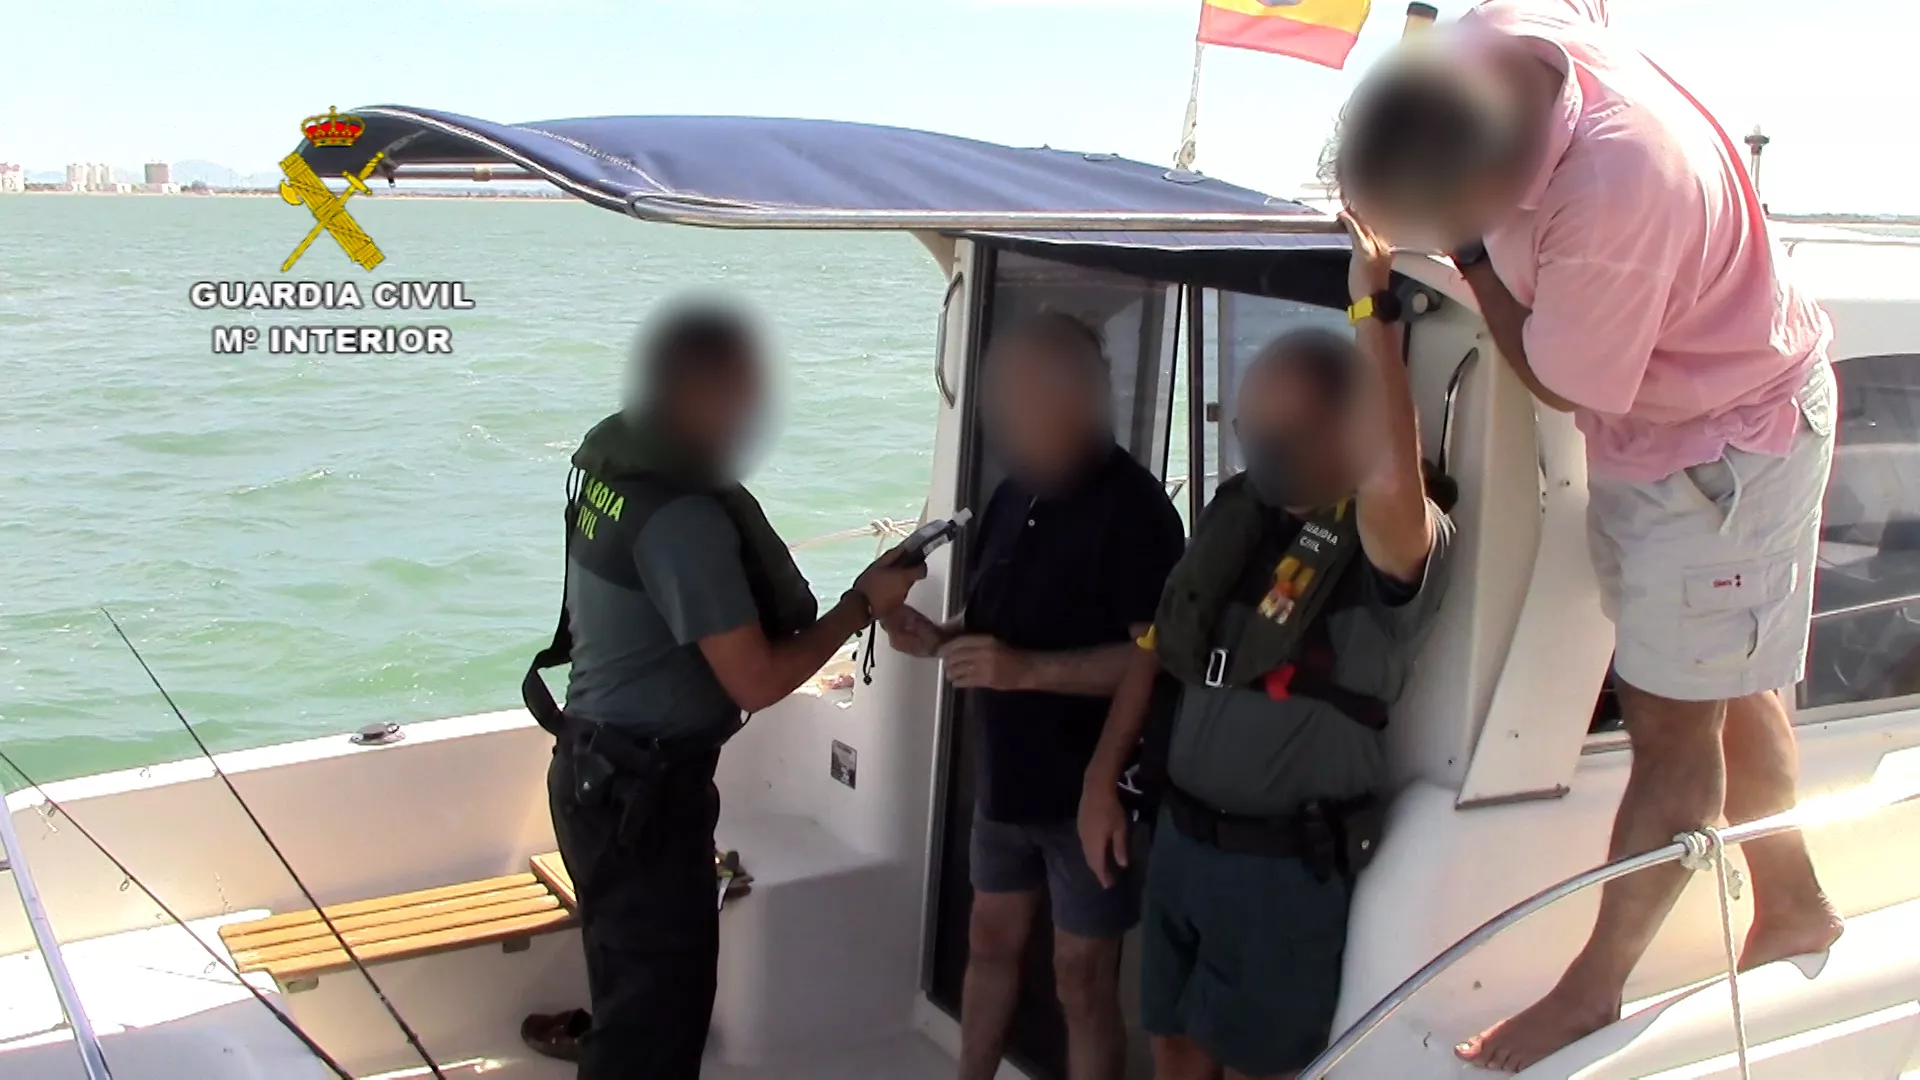 La Guardia Civil está intensificando la vigilancia en embarcaciones con controles de alcoholemia